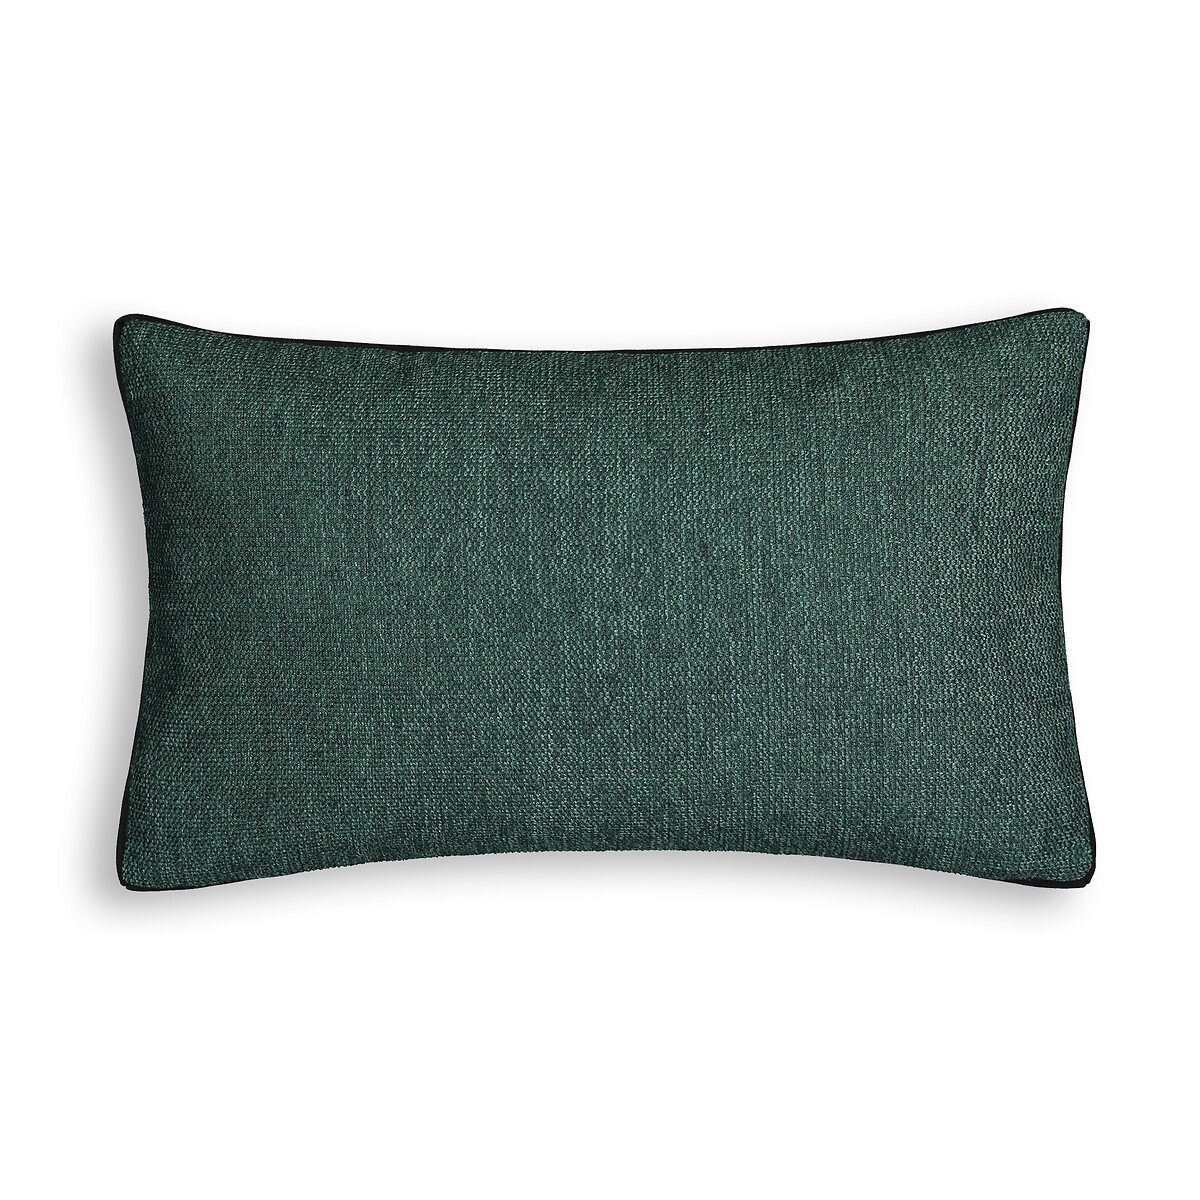 Чехол LaRedoute На подушку прямоугольный Pirjo 100 полиэстер 50 x 30 см зеленый, размер 50 x 30 см - фото 1